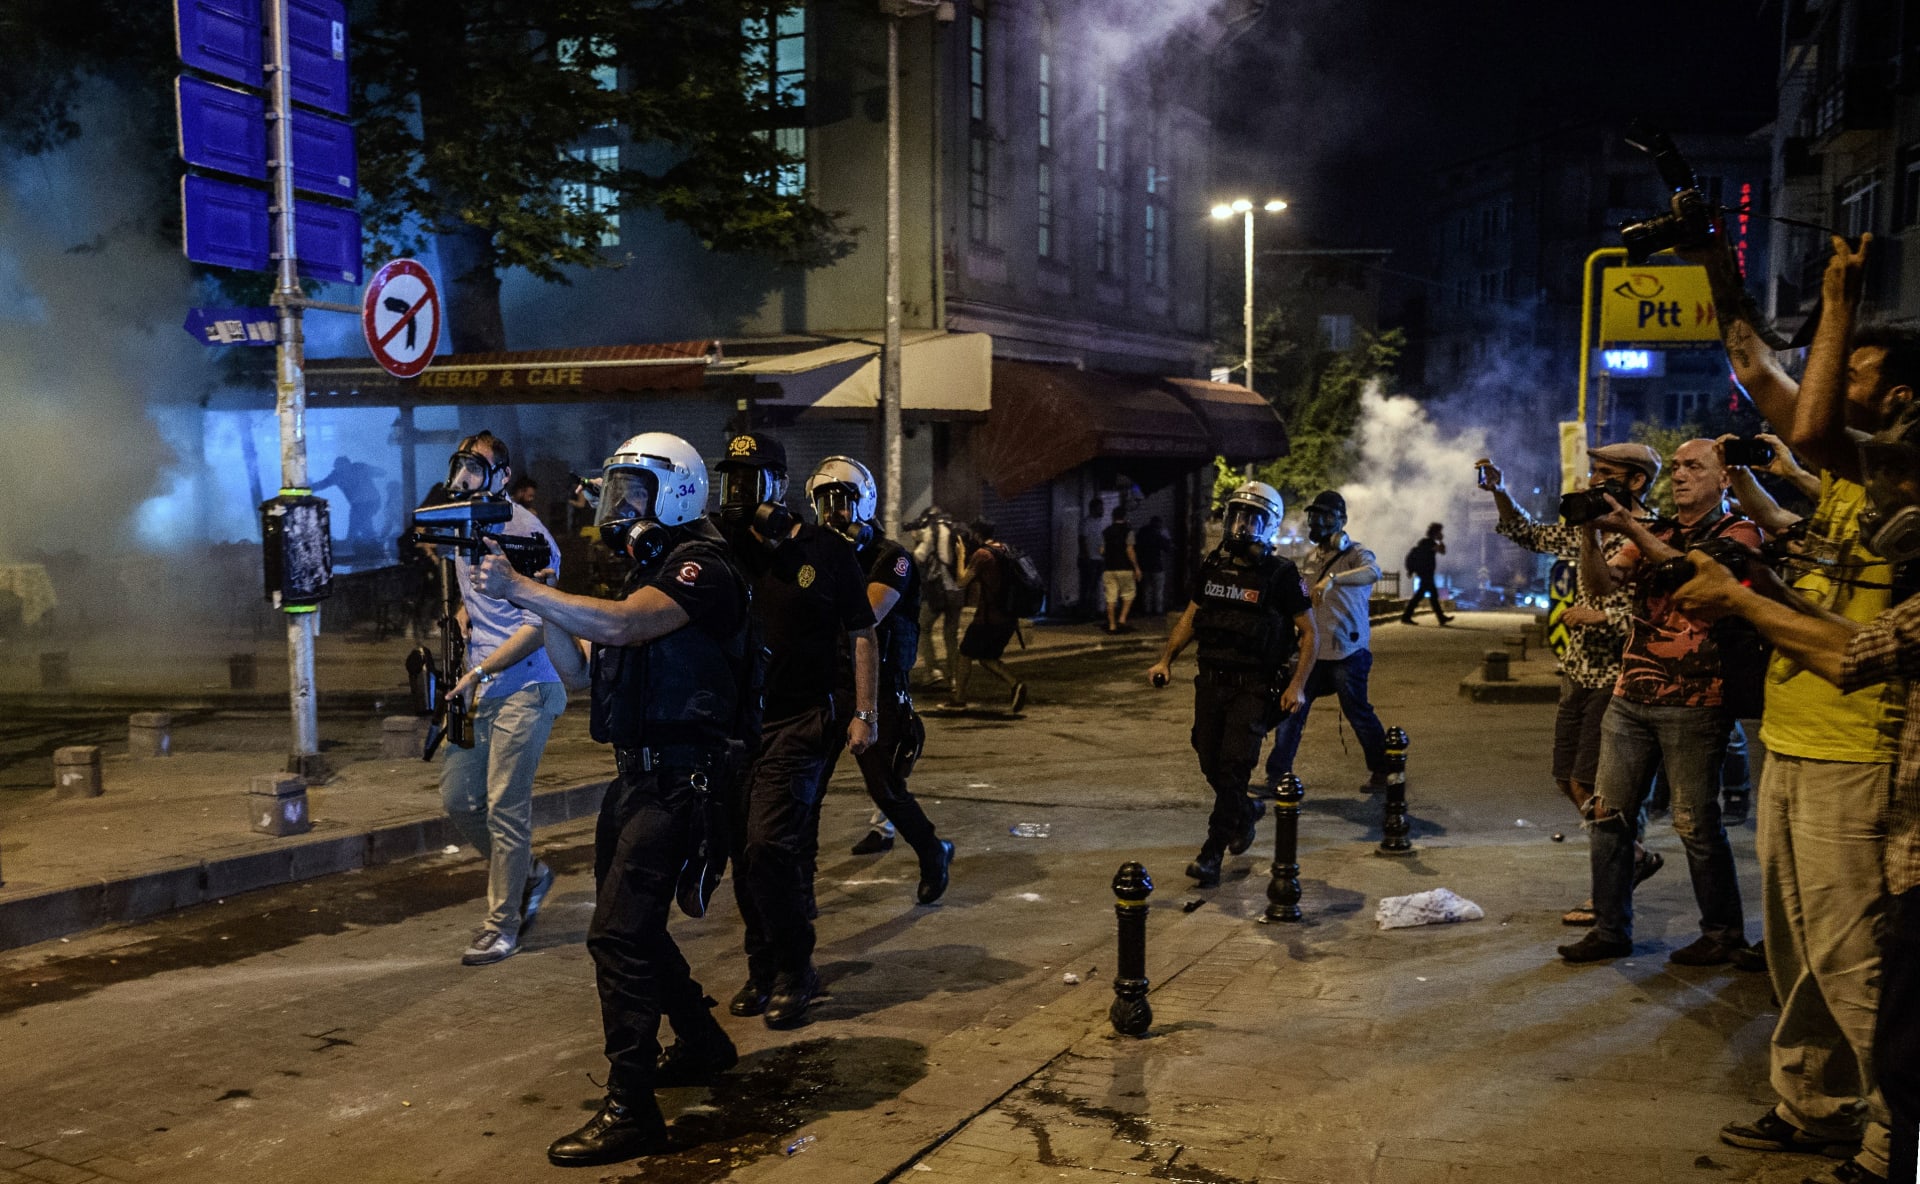 متشددون يهاجمون حفلا موسيقيا بتركيا معترضين على شرب الخمر برمضان